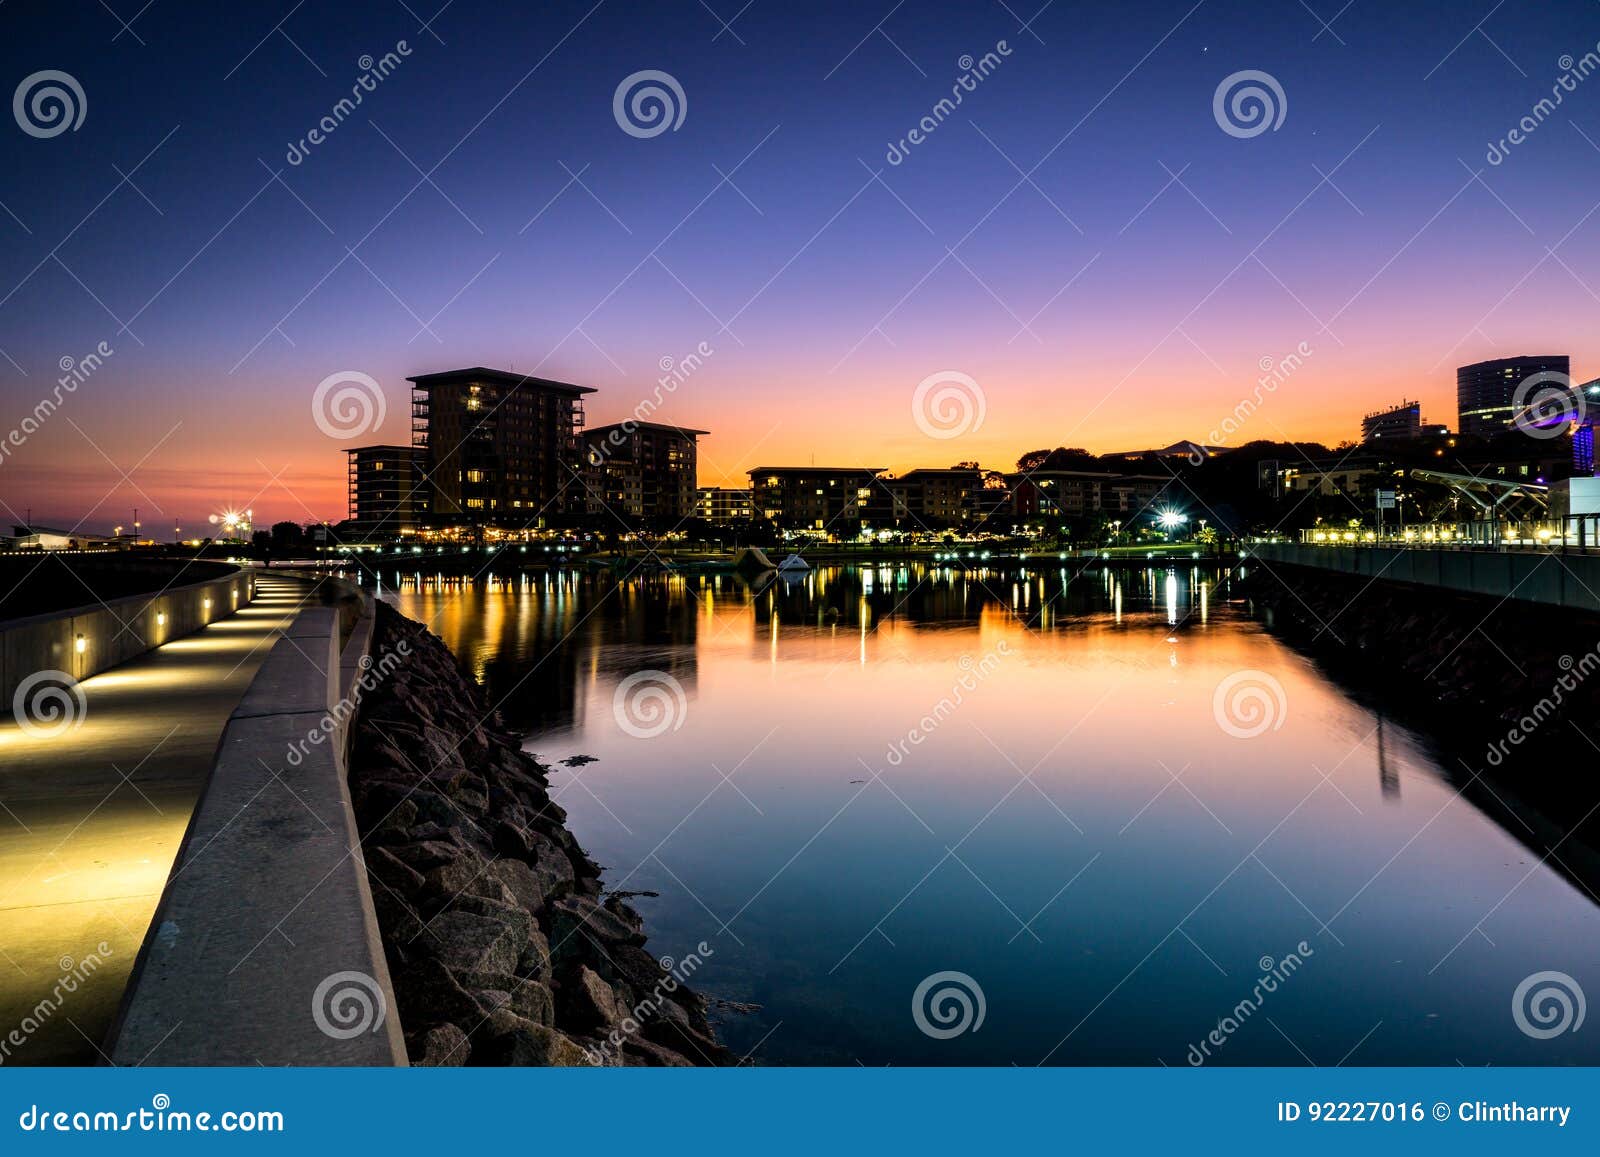 darwin city waterfront sunset